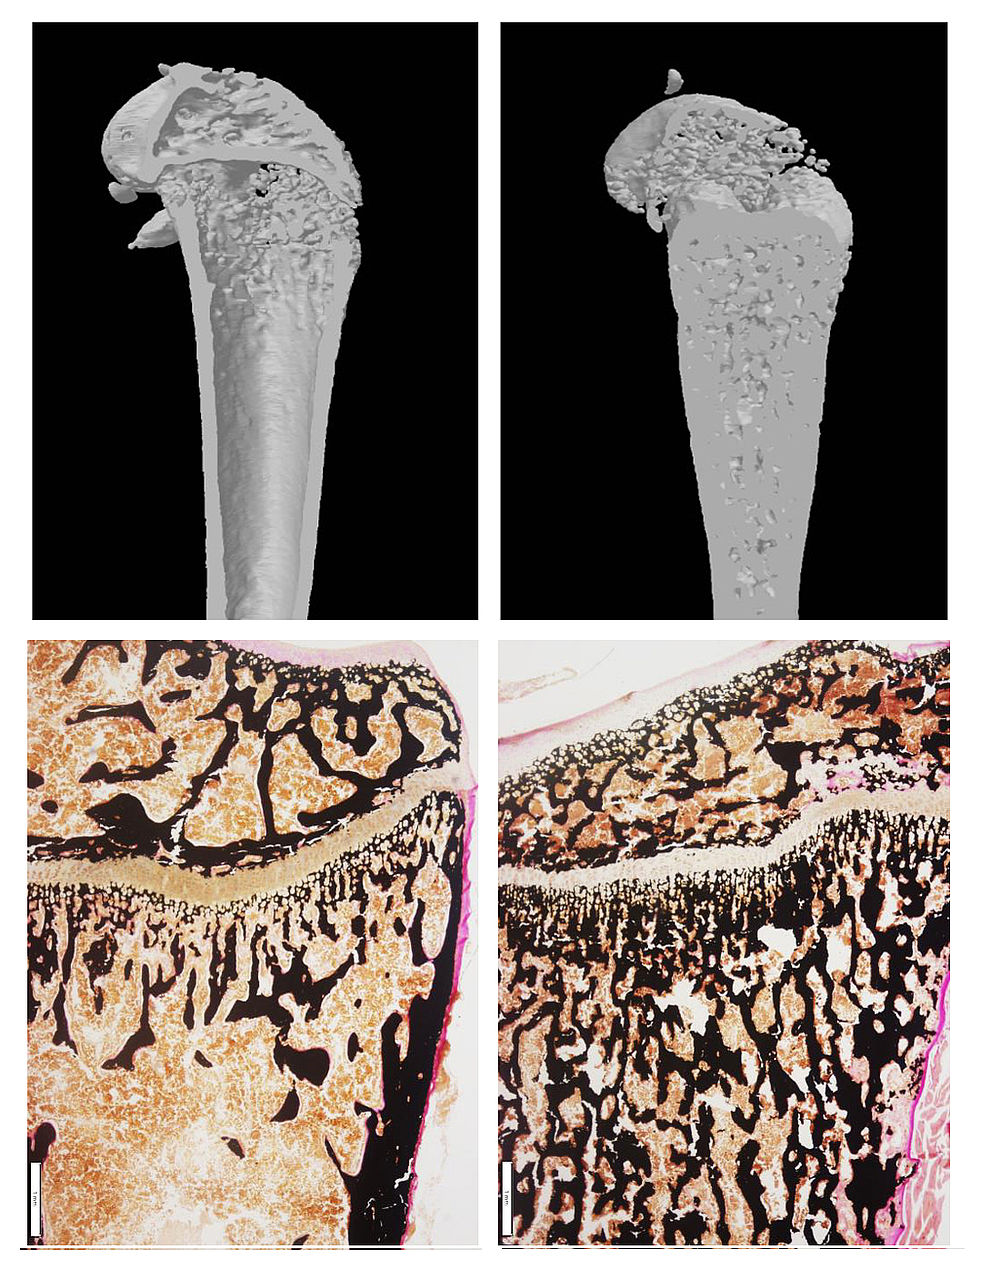 Oberschenkelknochen von gesunden und Osteopetrose-Mausmodellen